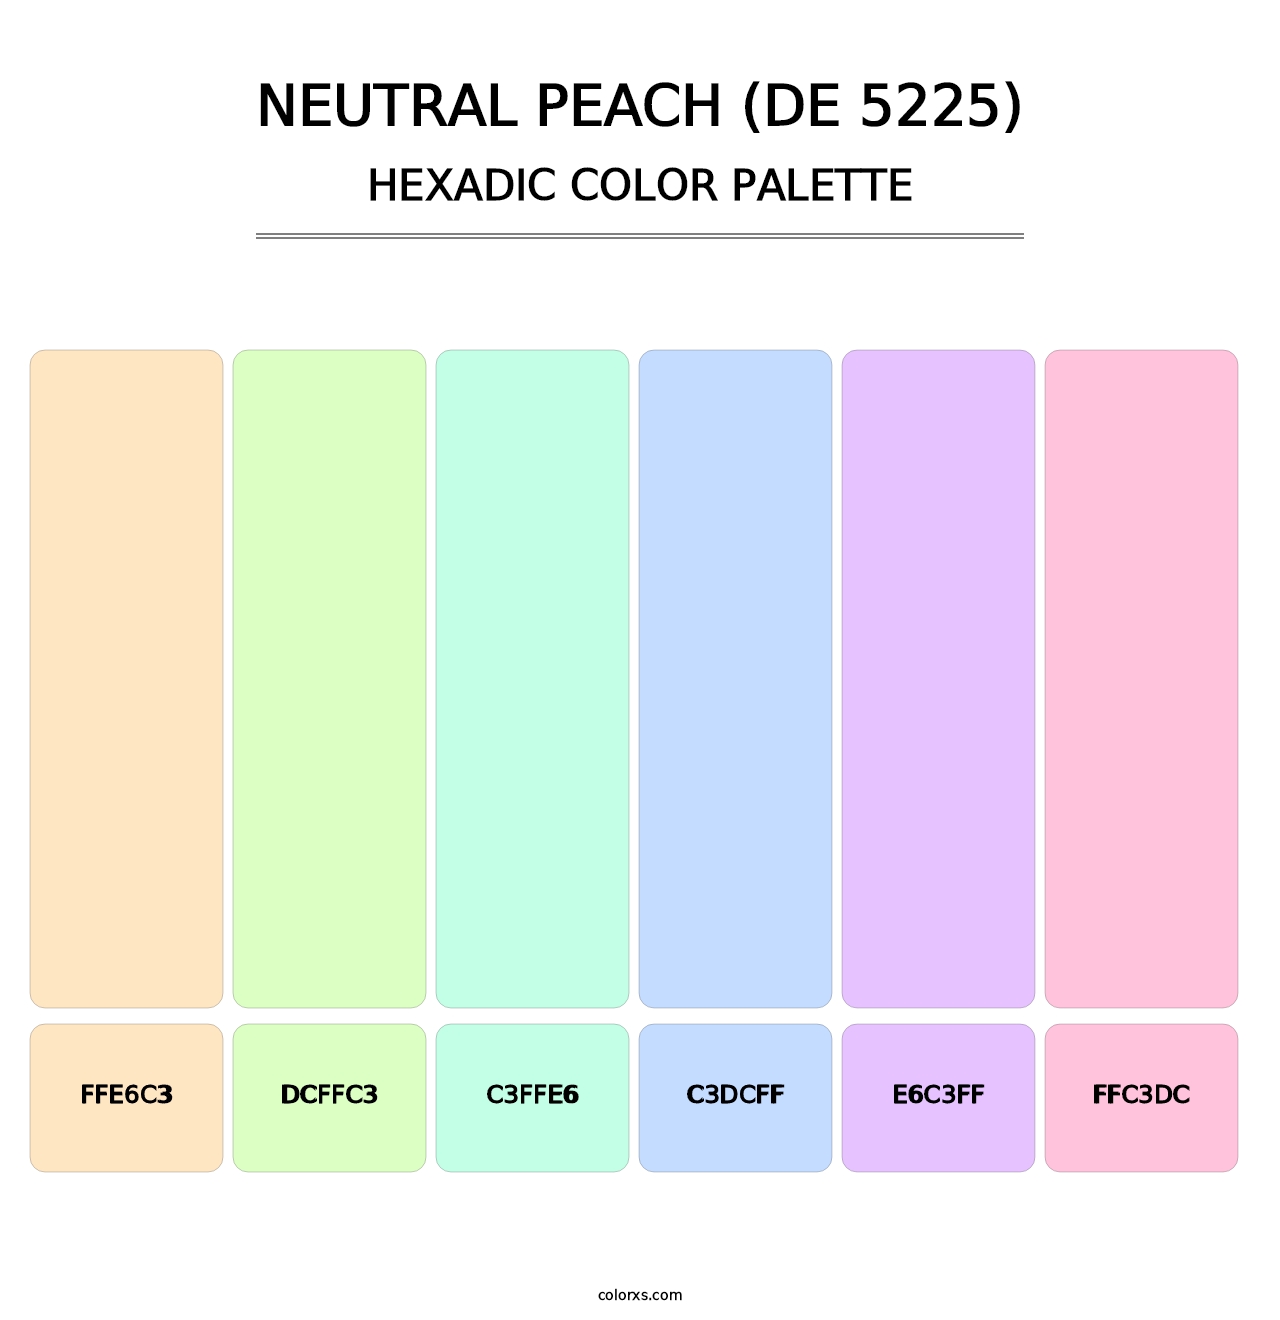 Neutral Peach (DE 5225) - Hexadic Color Palette